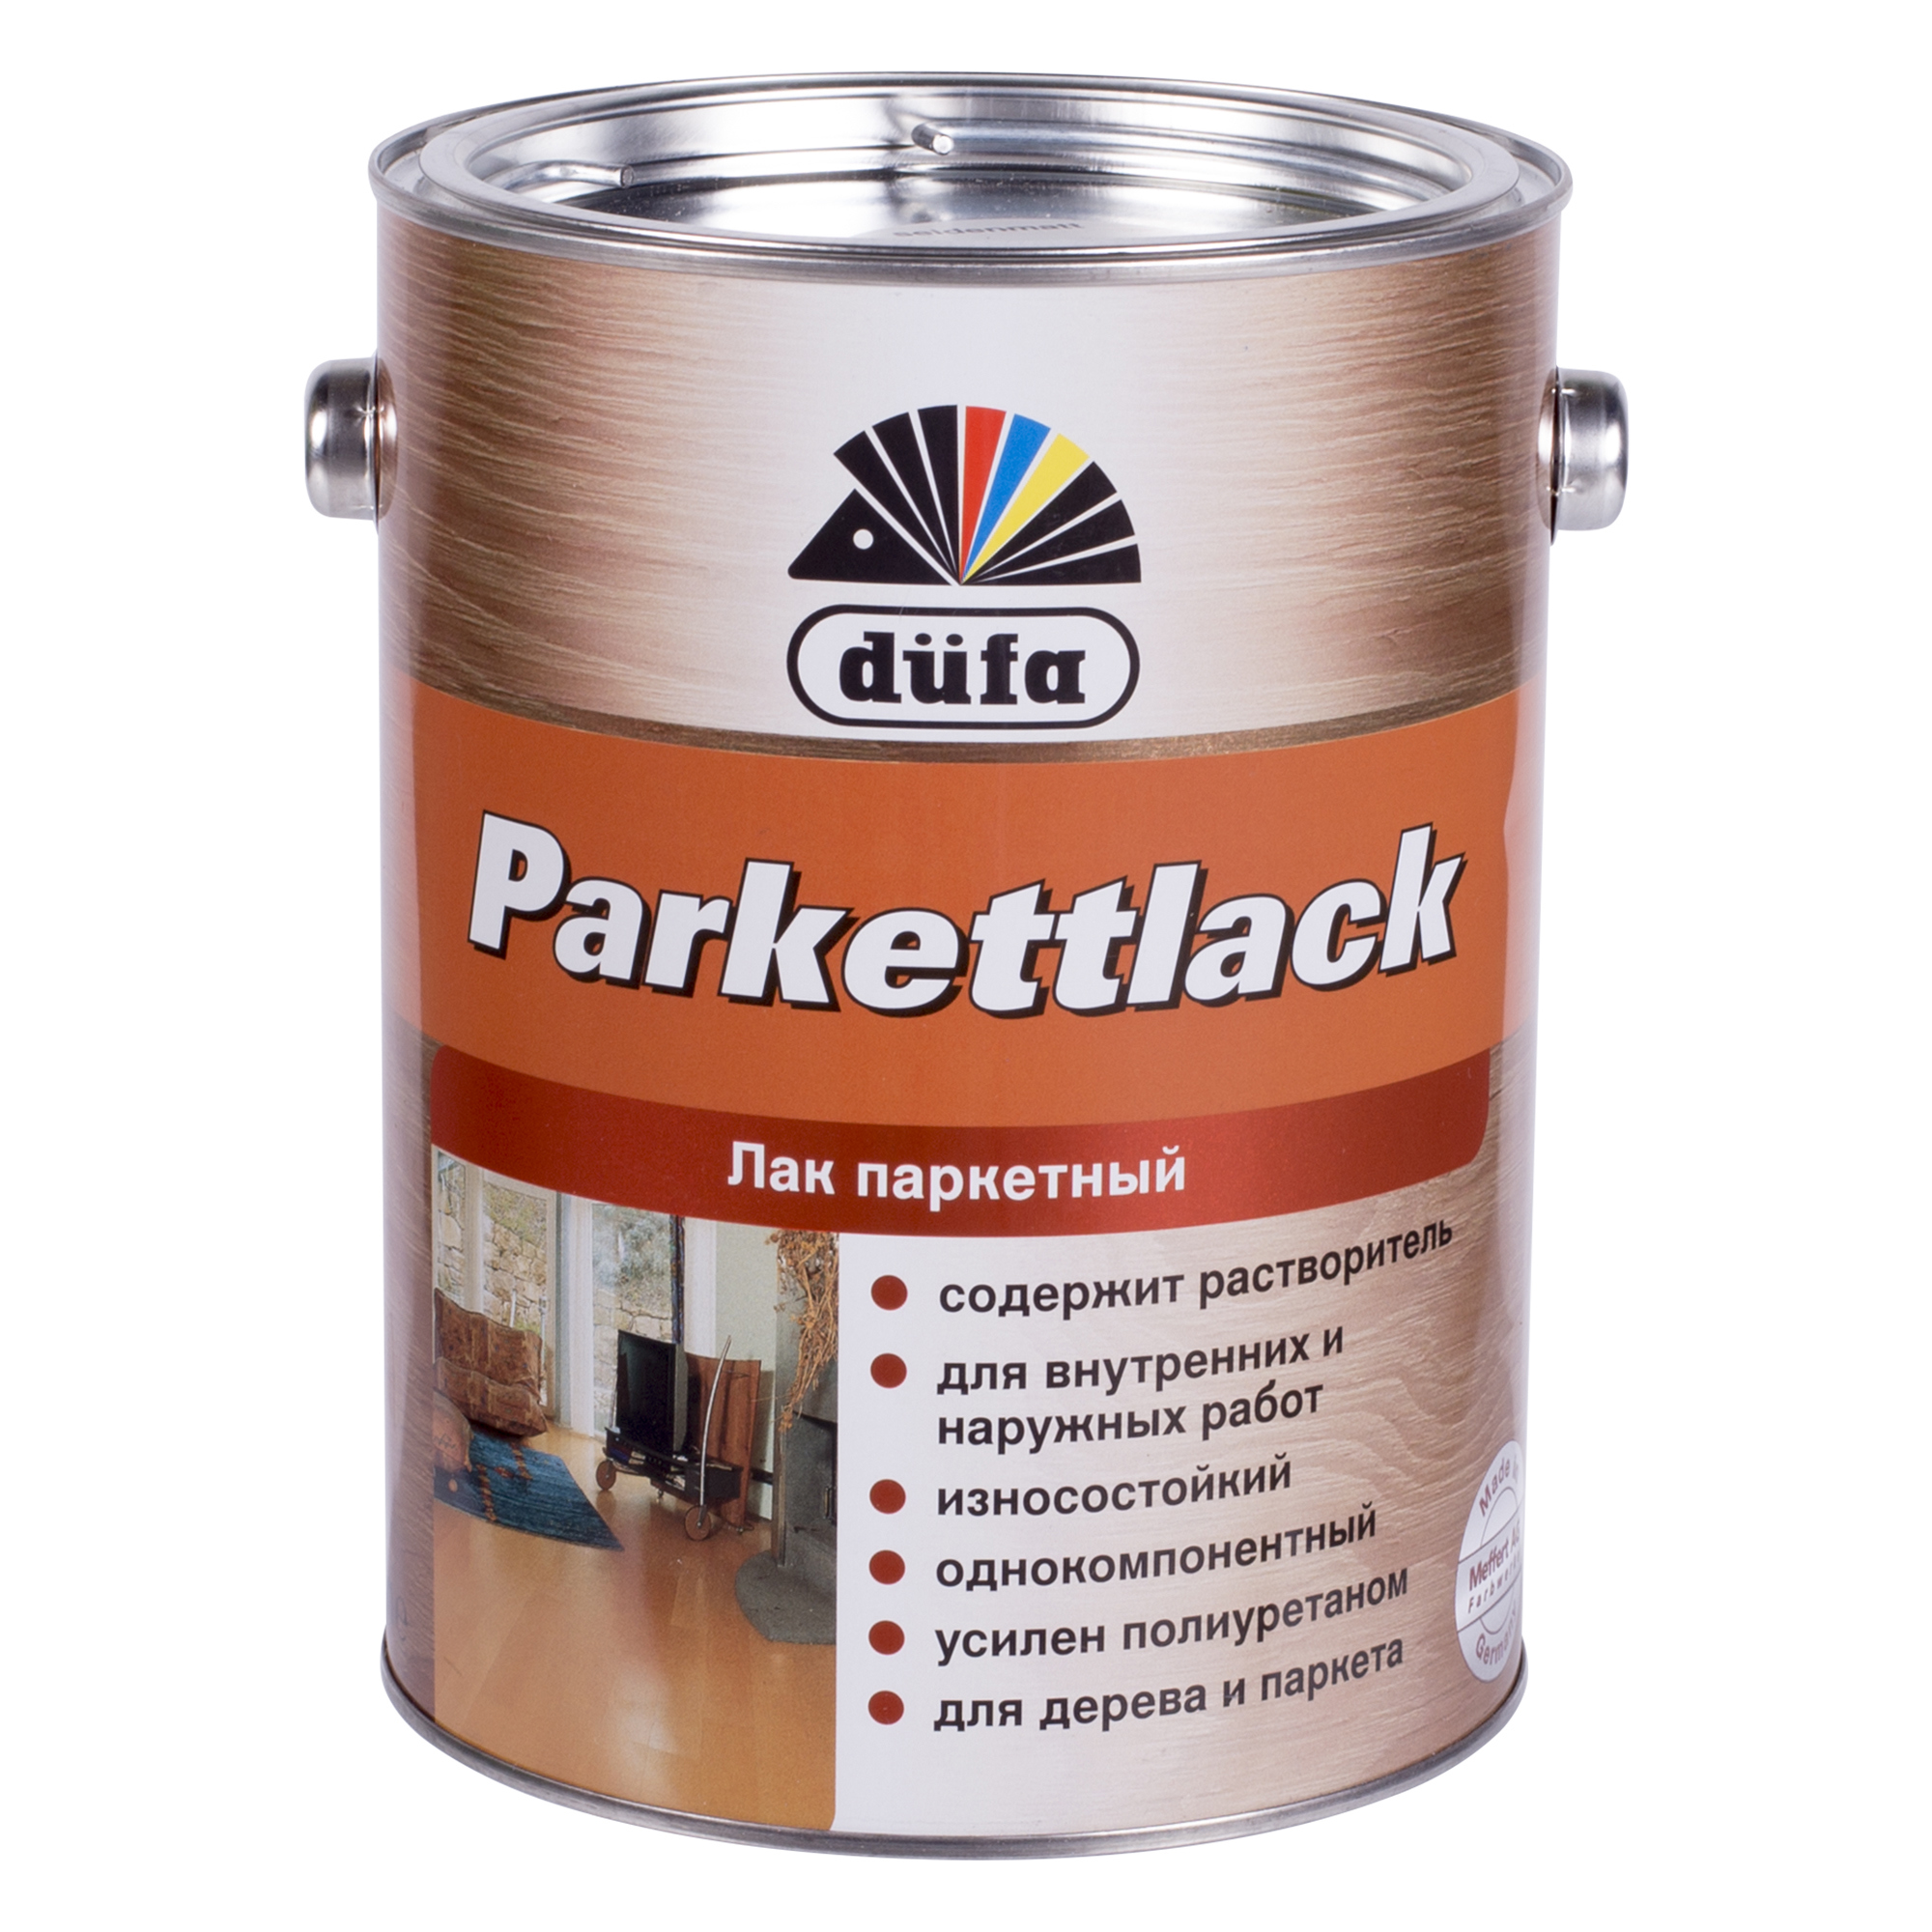  паркетный шелковисто-матовый Dufa Parkettlack 2.5 л по цене 1518 .